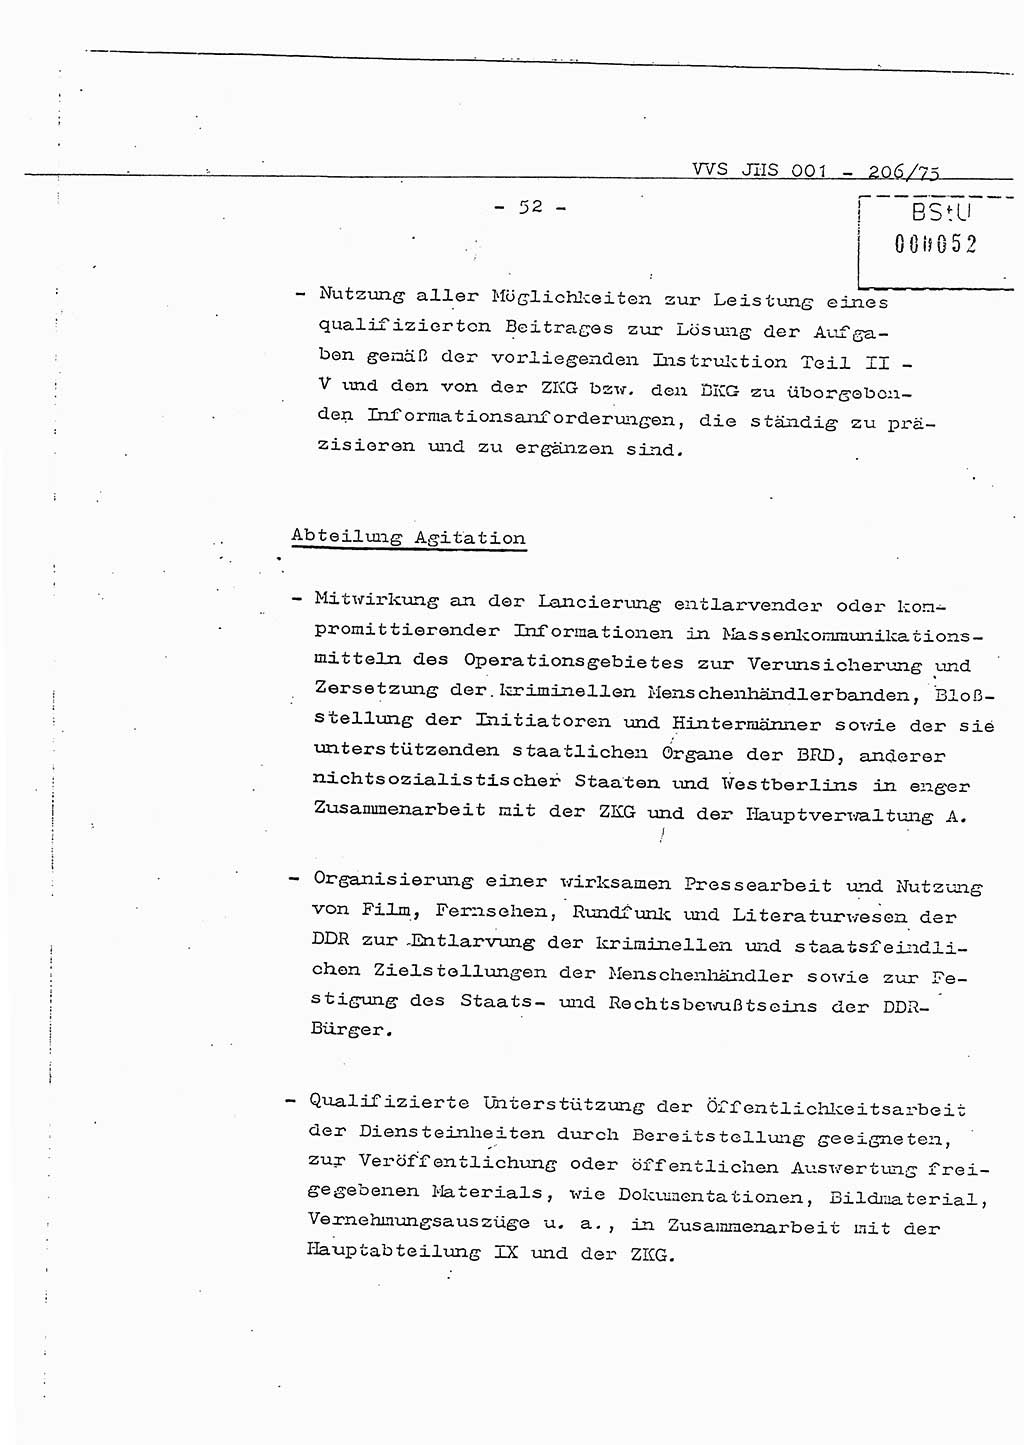 Dissertation Generalmajor Manfred Hummitzsch (Leiter der BV Leipzig), Generalmajor Heinz Fiedler (HA Ⅵ), Oberst Rolf Fister (HA Ⅸ), Ministerium für Staatssicherheit (MfS) [Deutsche Demokratische Republik (DDR)], Juristische Hochschule (JHS), Vertrauliche Verschlußsache (VVS) 001-206/75, Potsdam 1975, Seite 52 (Diss. MfS DDR JHS VVS 001-206/75 1975, S. 52)